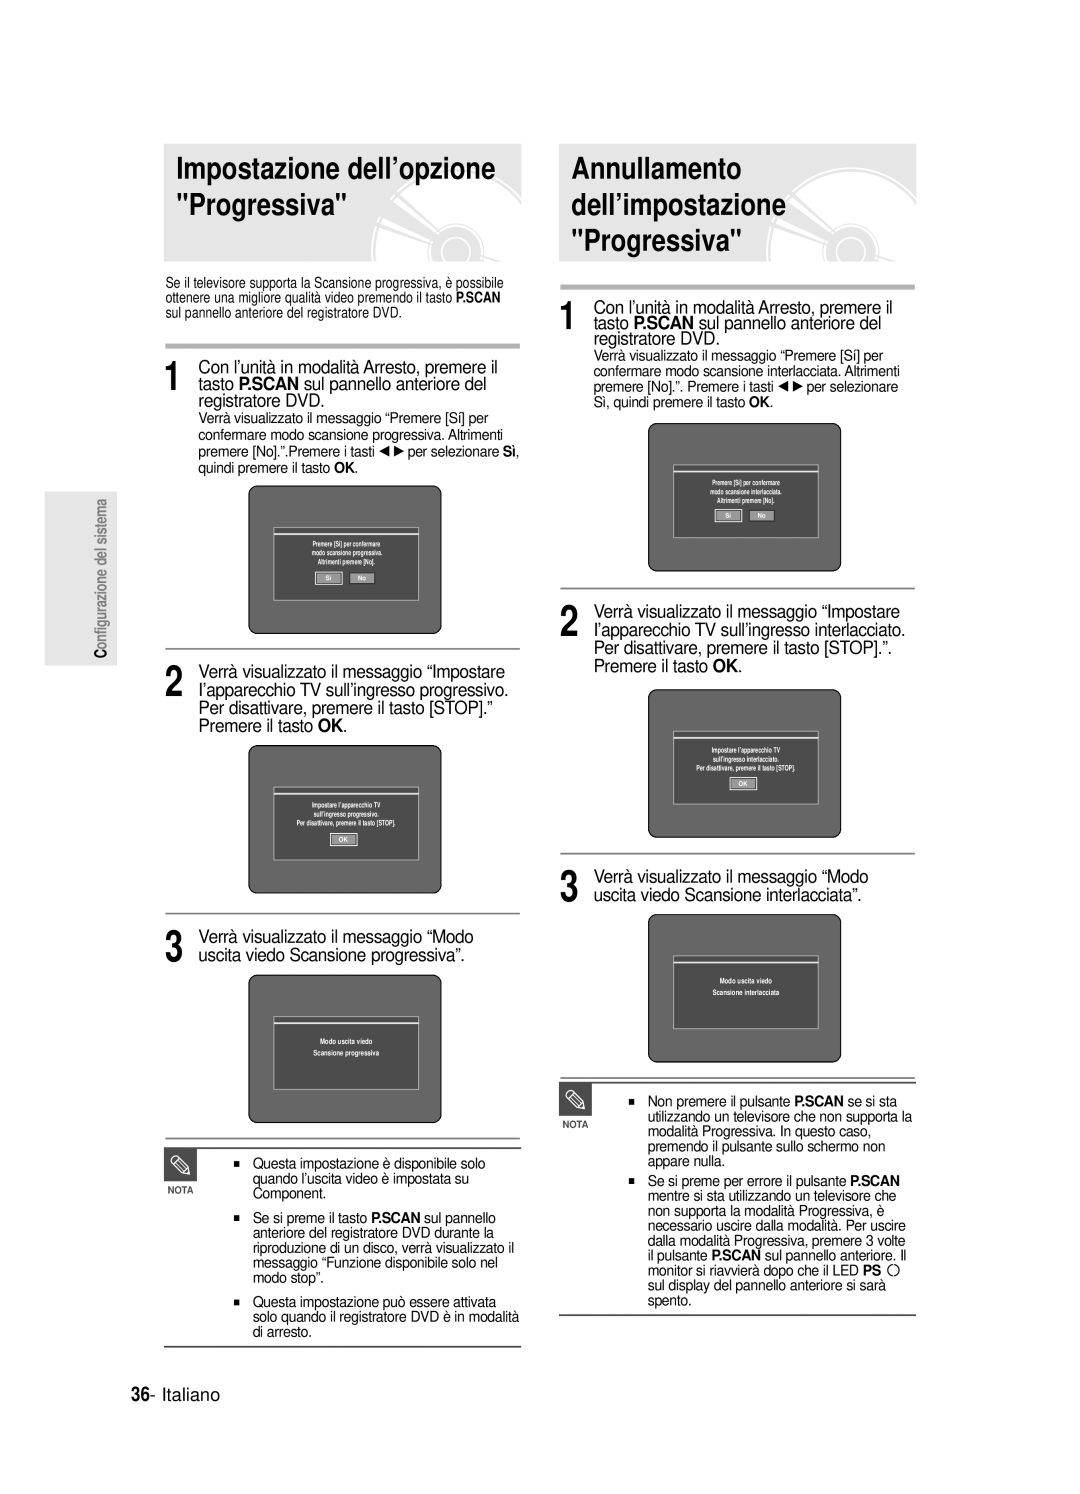 Samsung DVD-R121E/XEG Annullamento dell’impostazione Progressiva, Impostazione dell’opzione Progressiva, registratore DVD 